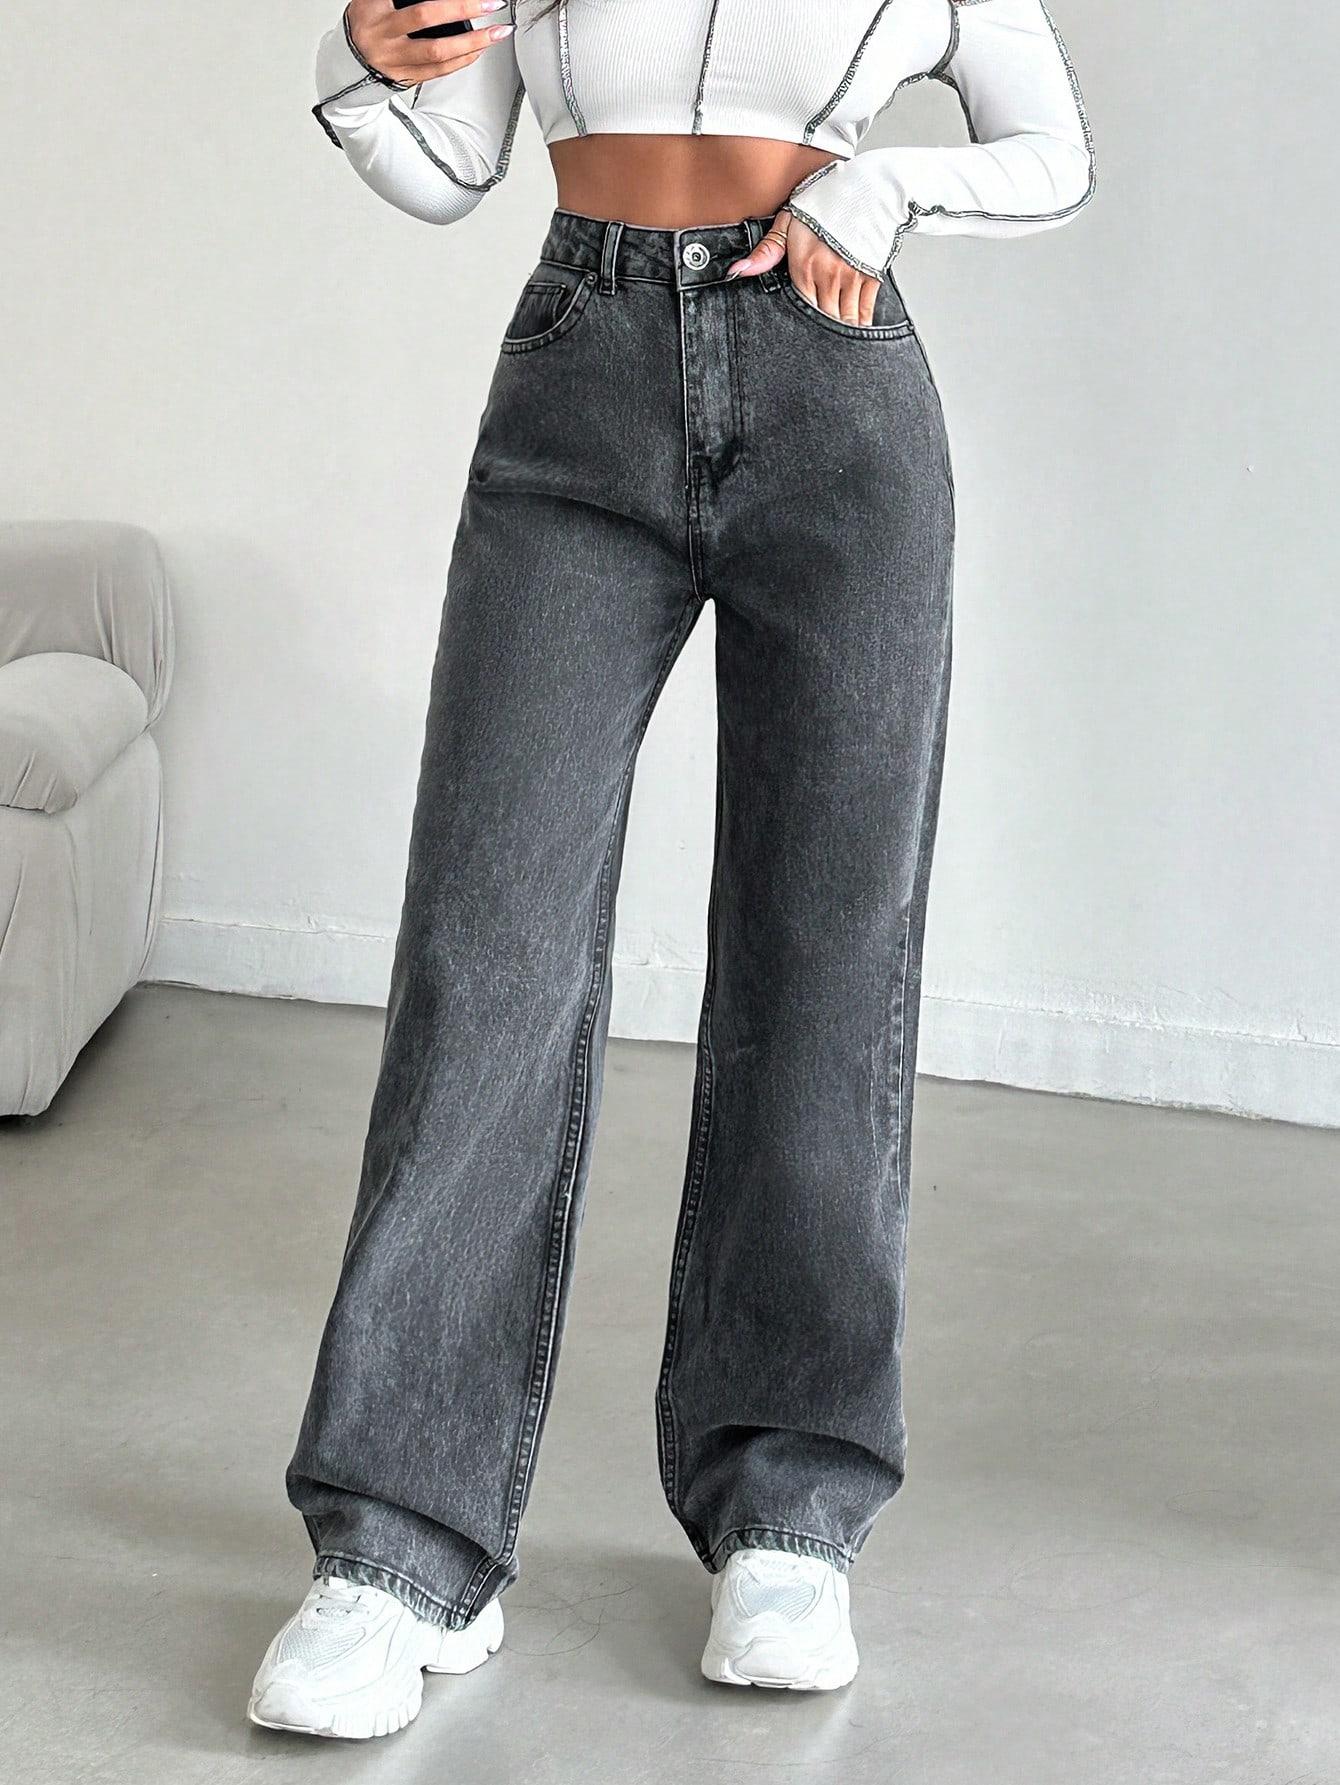 szare proste spodnie jeans szeroka nogawka wysoki stan 